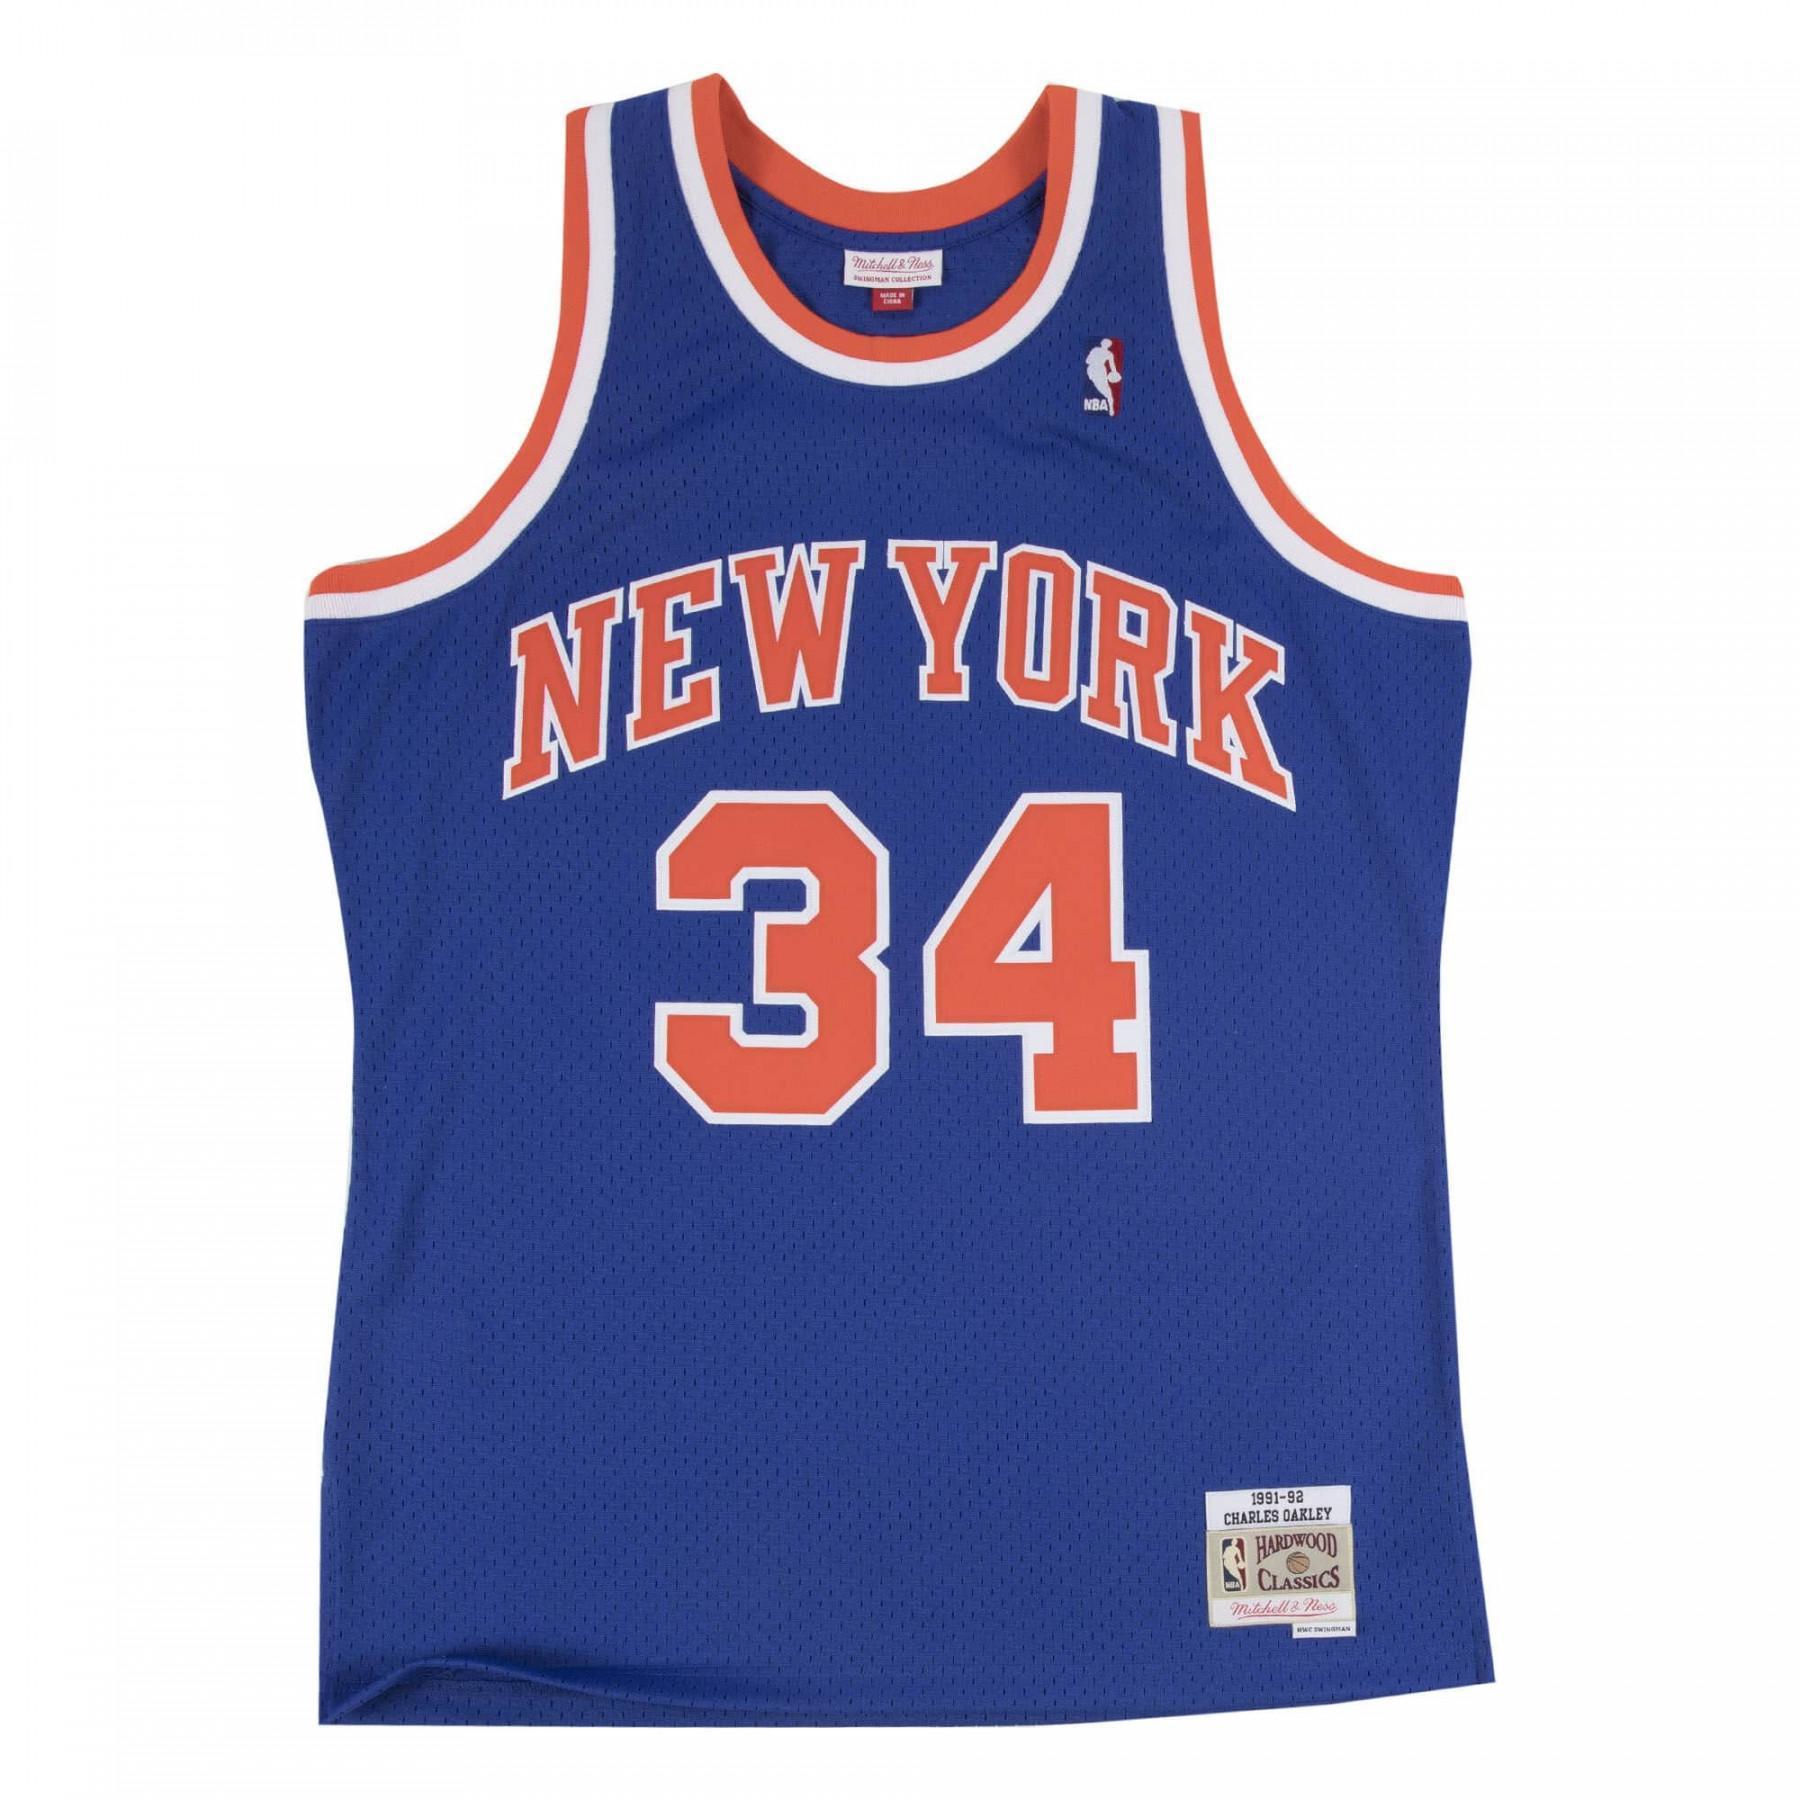 Jersey New York Knicks Swingman Charles Oakley #34